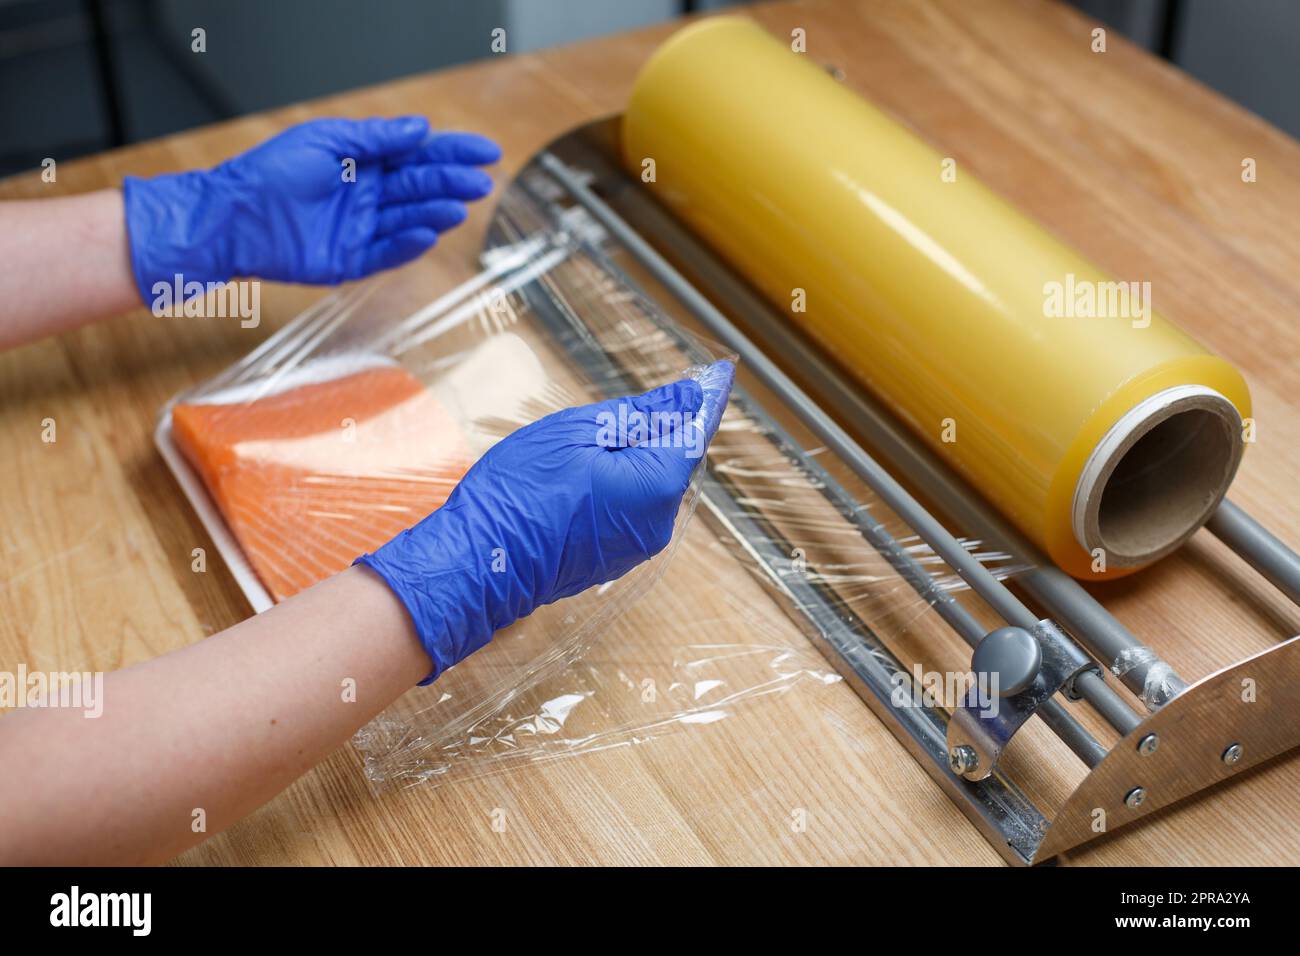 Arbeiter in Einweghandschuhen umwickelt ein Stück Lachsfilet, das auf einer Kunststoffschale in durchsichtiger Folie liegt. Stockfoto